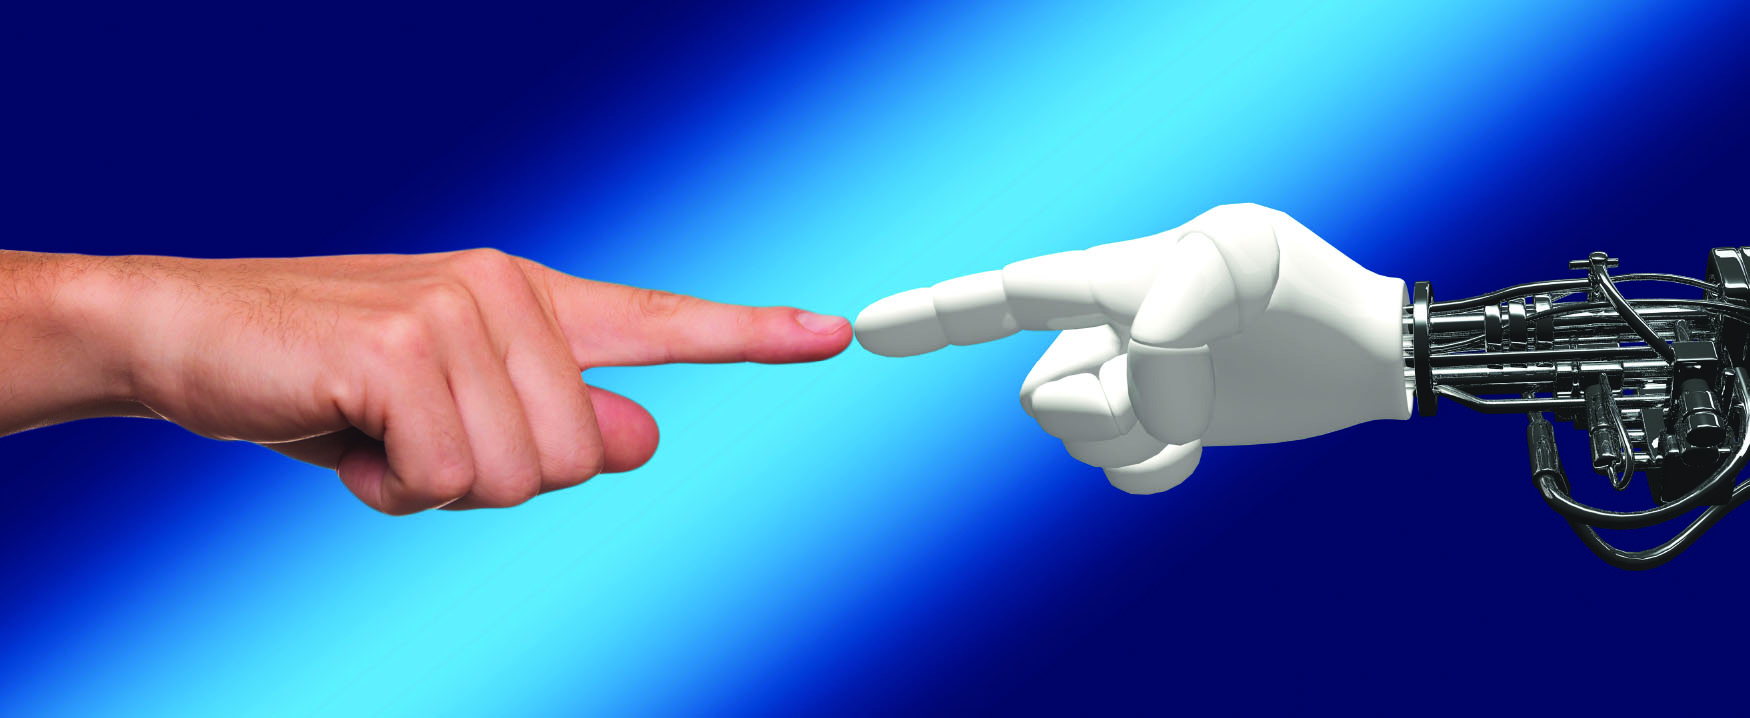 这张照片左边是人的手，右边是机器人的手。 他们的食指在中间。